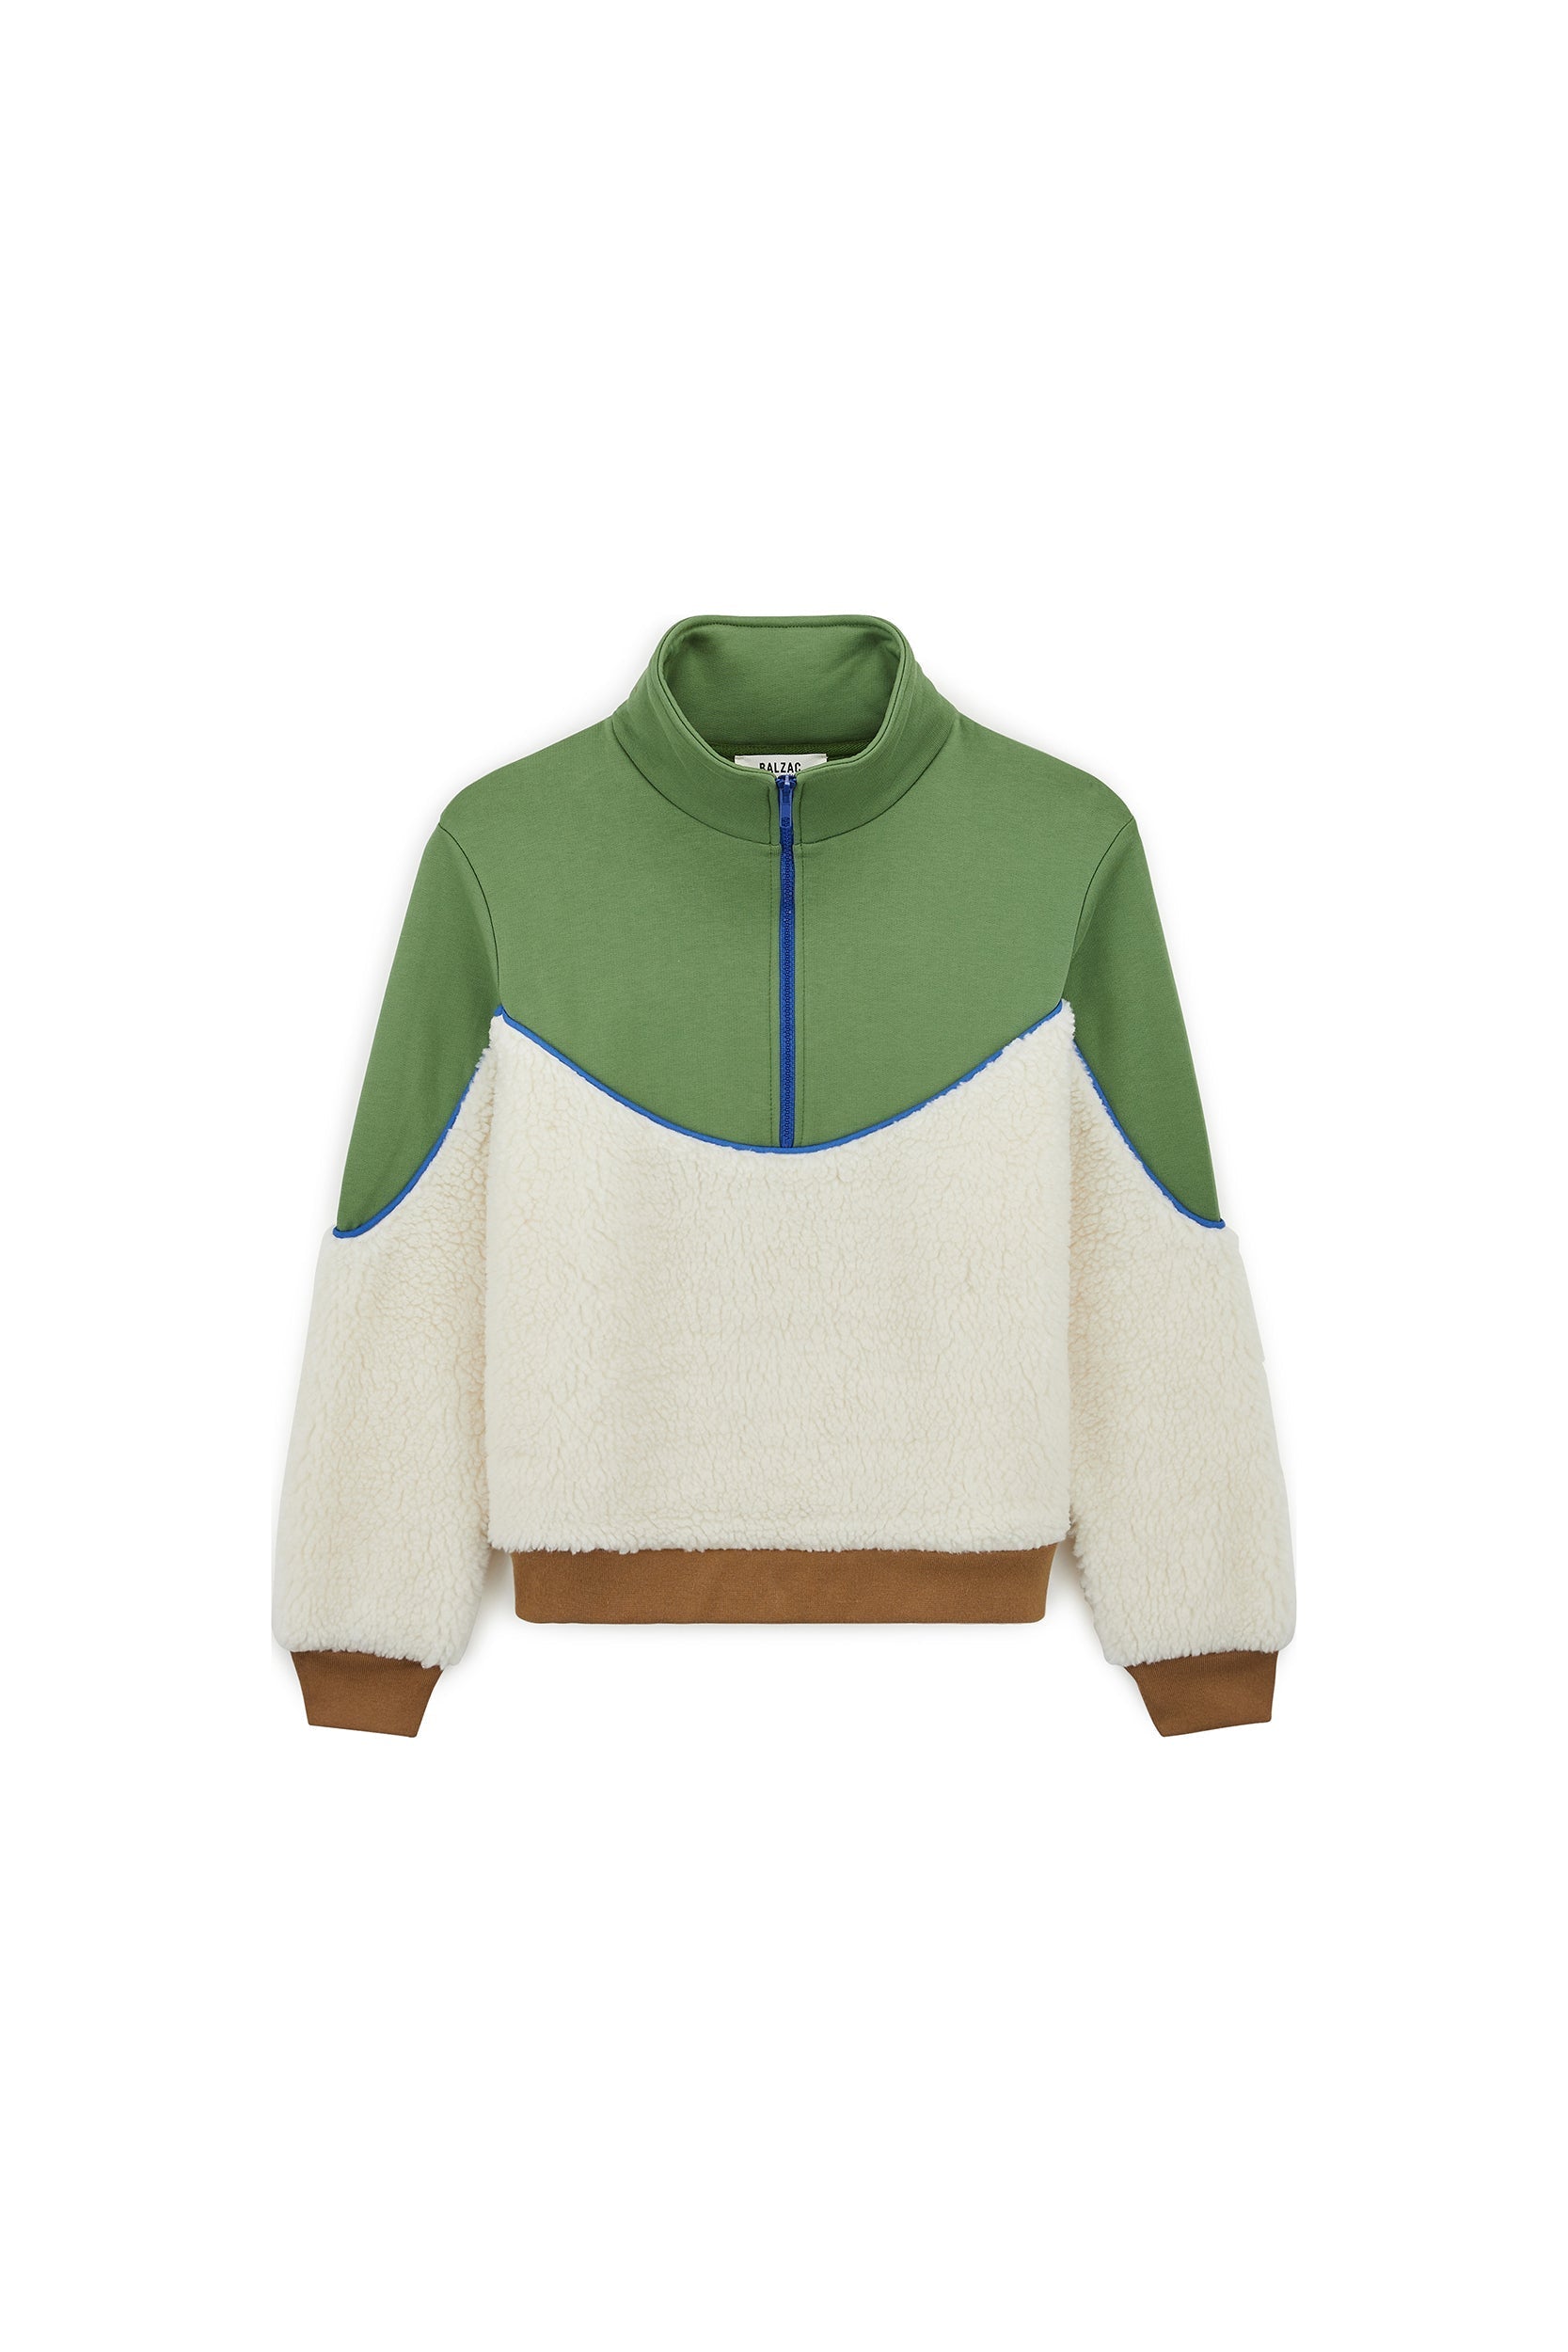 brown and green fleece mirror sweatshirt